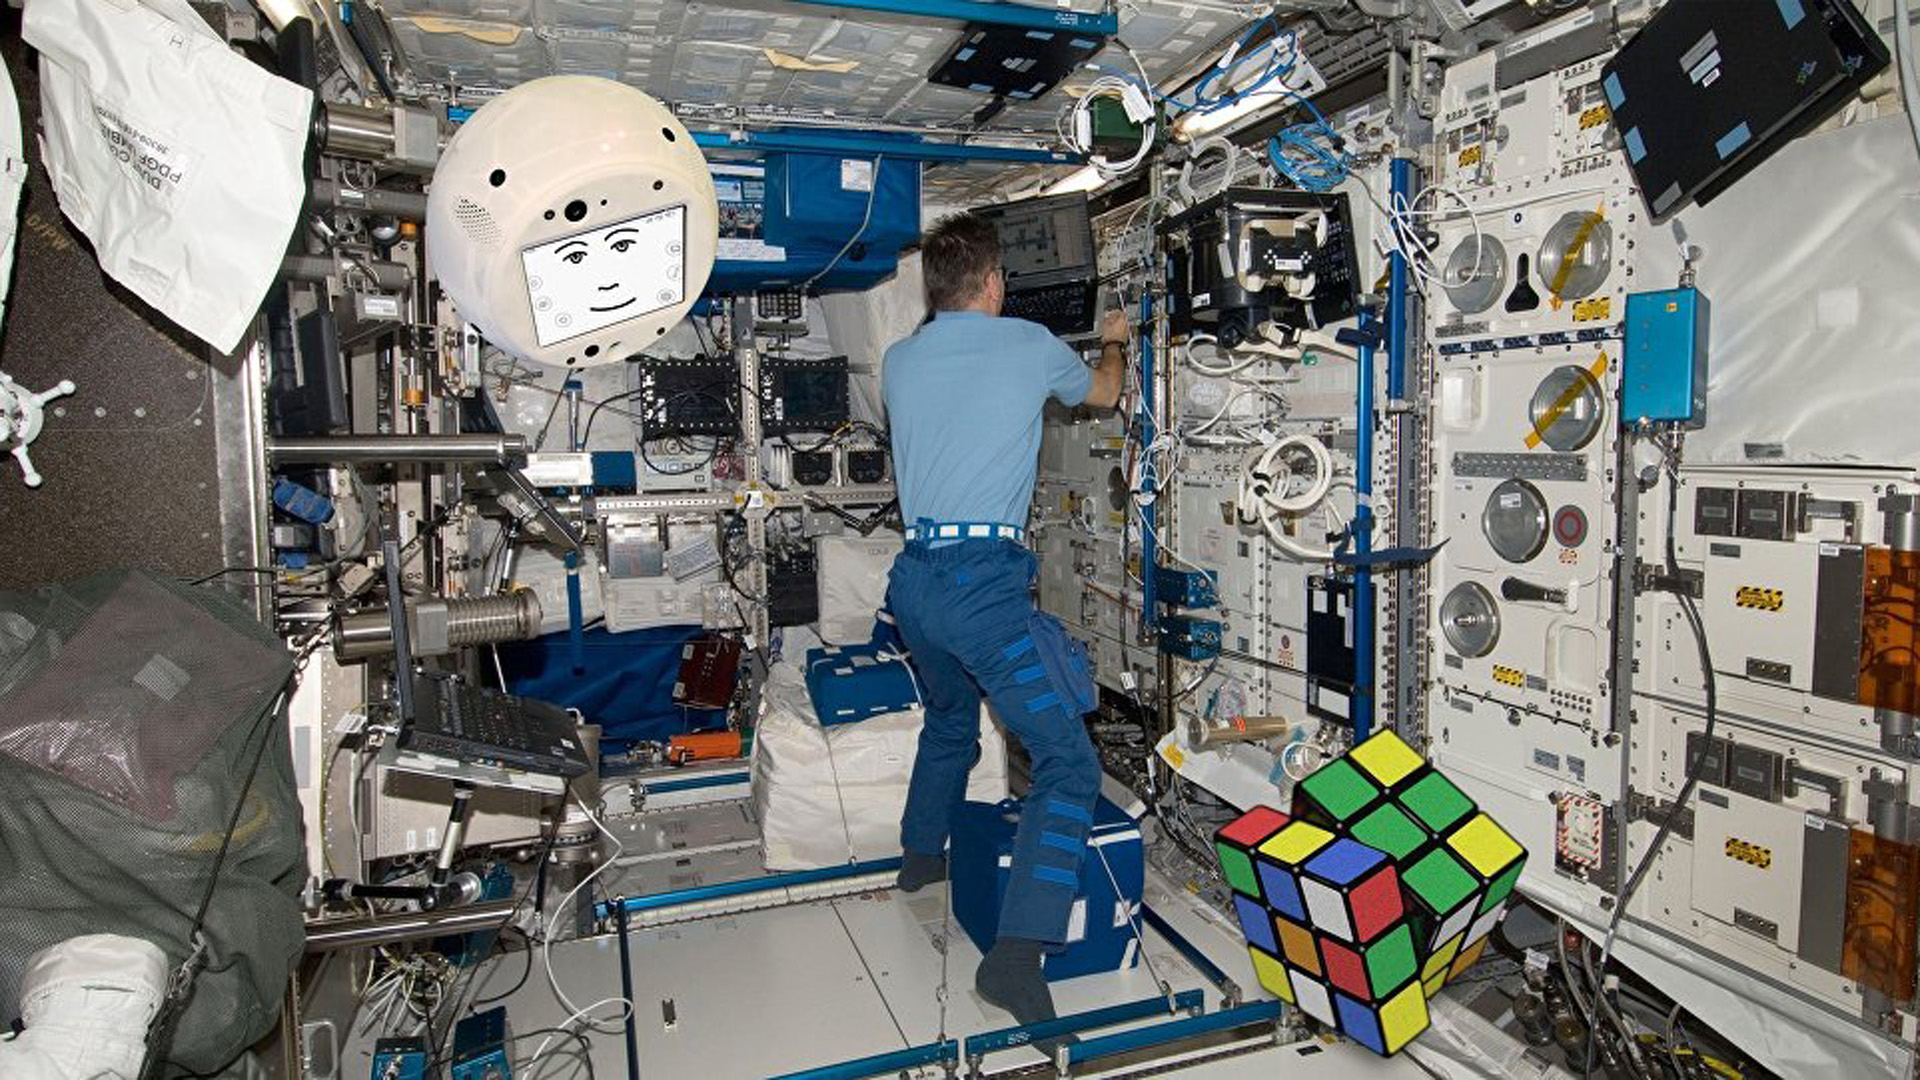 La computadora artificial CIMON ayudó a los astronautas a múltiples tareas, como por ejemplo armar un cubo Rubik gigante en la Estación Espacial Internacional